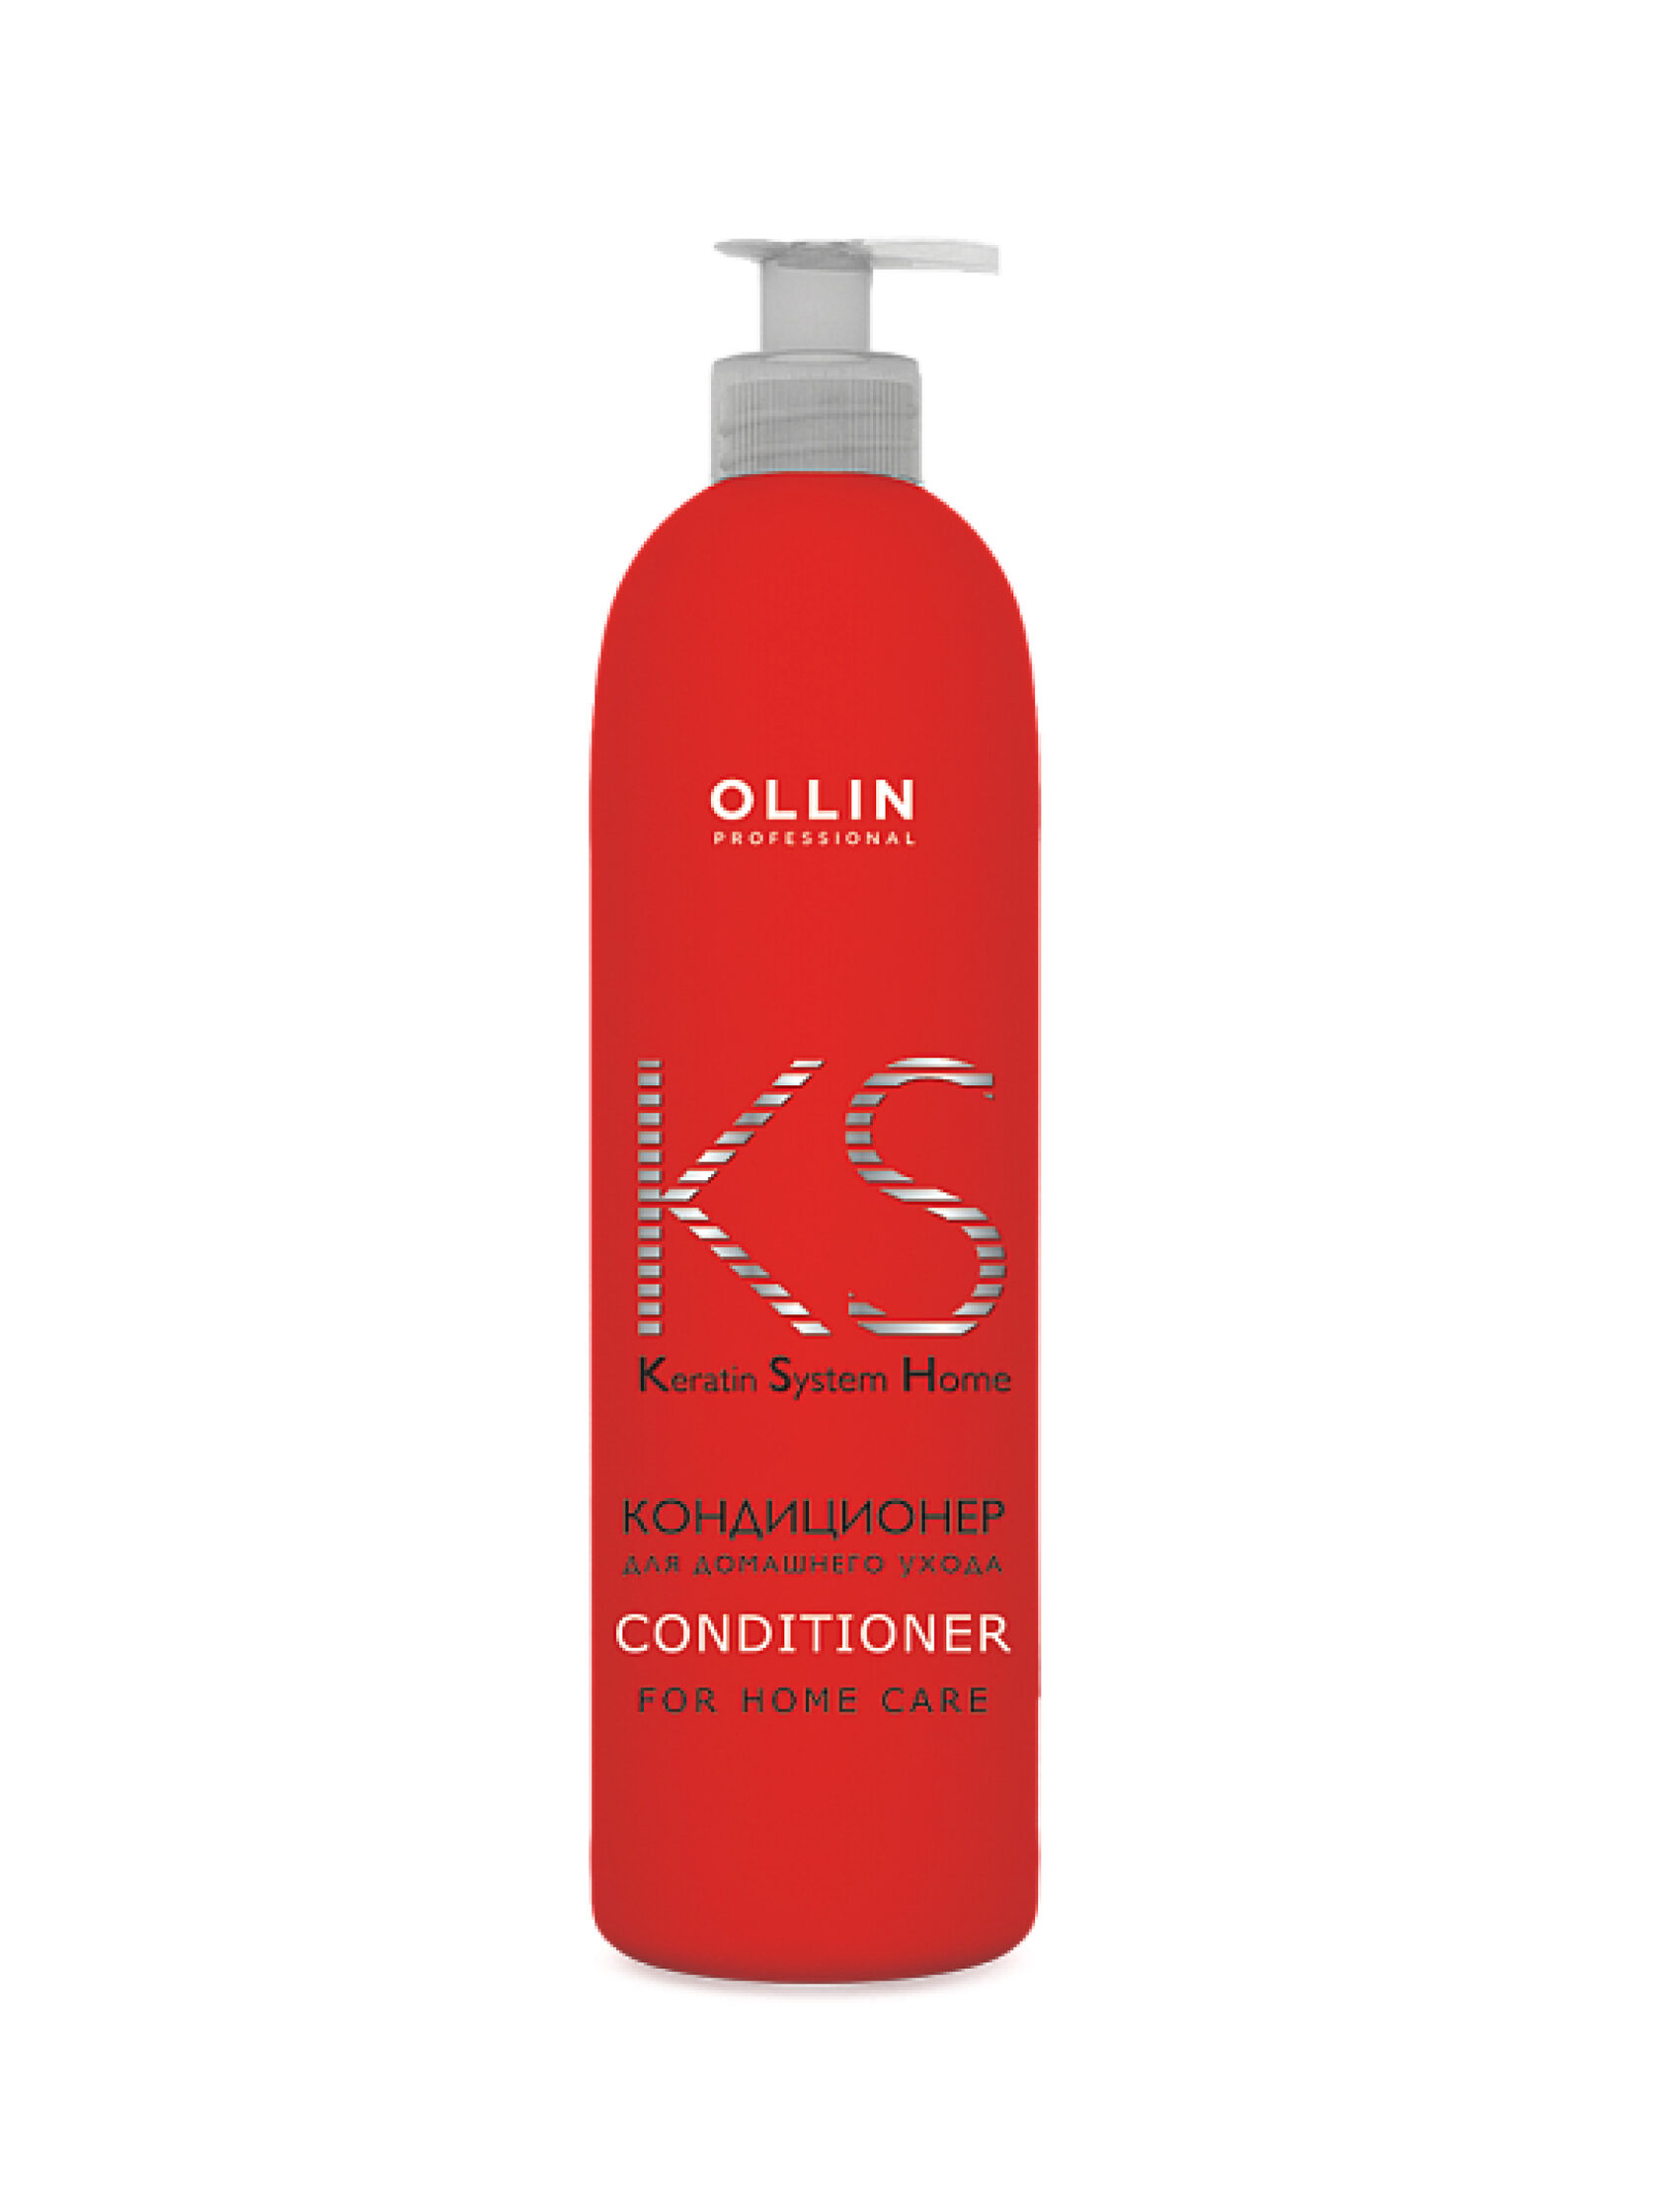 Кондиционер для волос keratin. Ollin Keratin System fixing Mask) – 500 мл. Ollin Keratine System фиксирующая маска с кератином для осветлённых волос 500мл. Ollin professional кондиционер для волос. Шампунь Оллин с кератином.